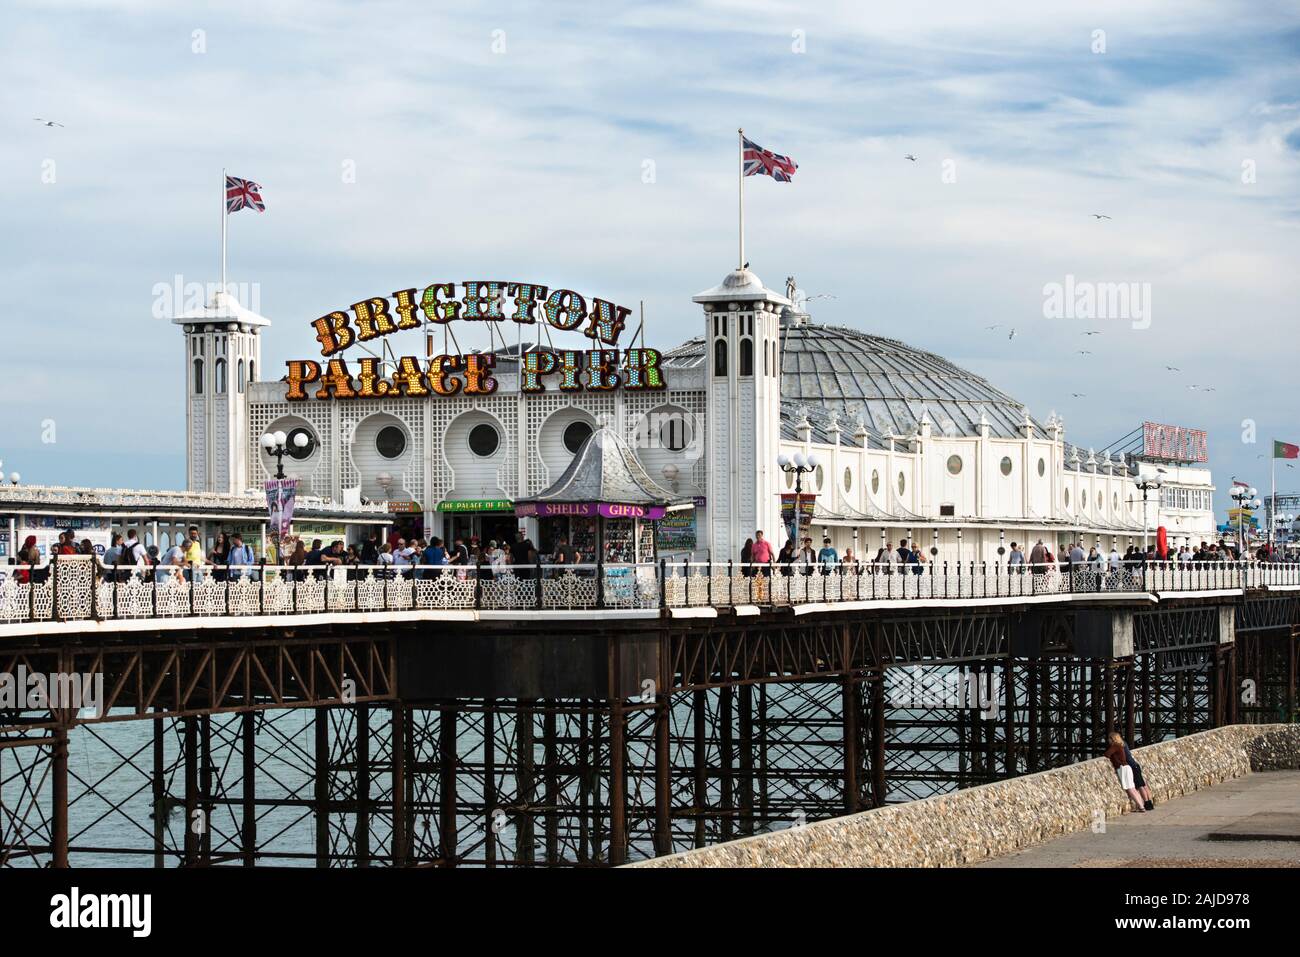 Überfüllter Brighton Palace Pier und Vergnügungspark an einem sonnigen Tag. Verwaltet und betrieben von der Eklektic-Bar-Gruppe. Kultige Touristenattraktion. Kopierbereich. Stockfoto